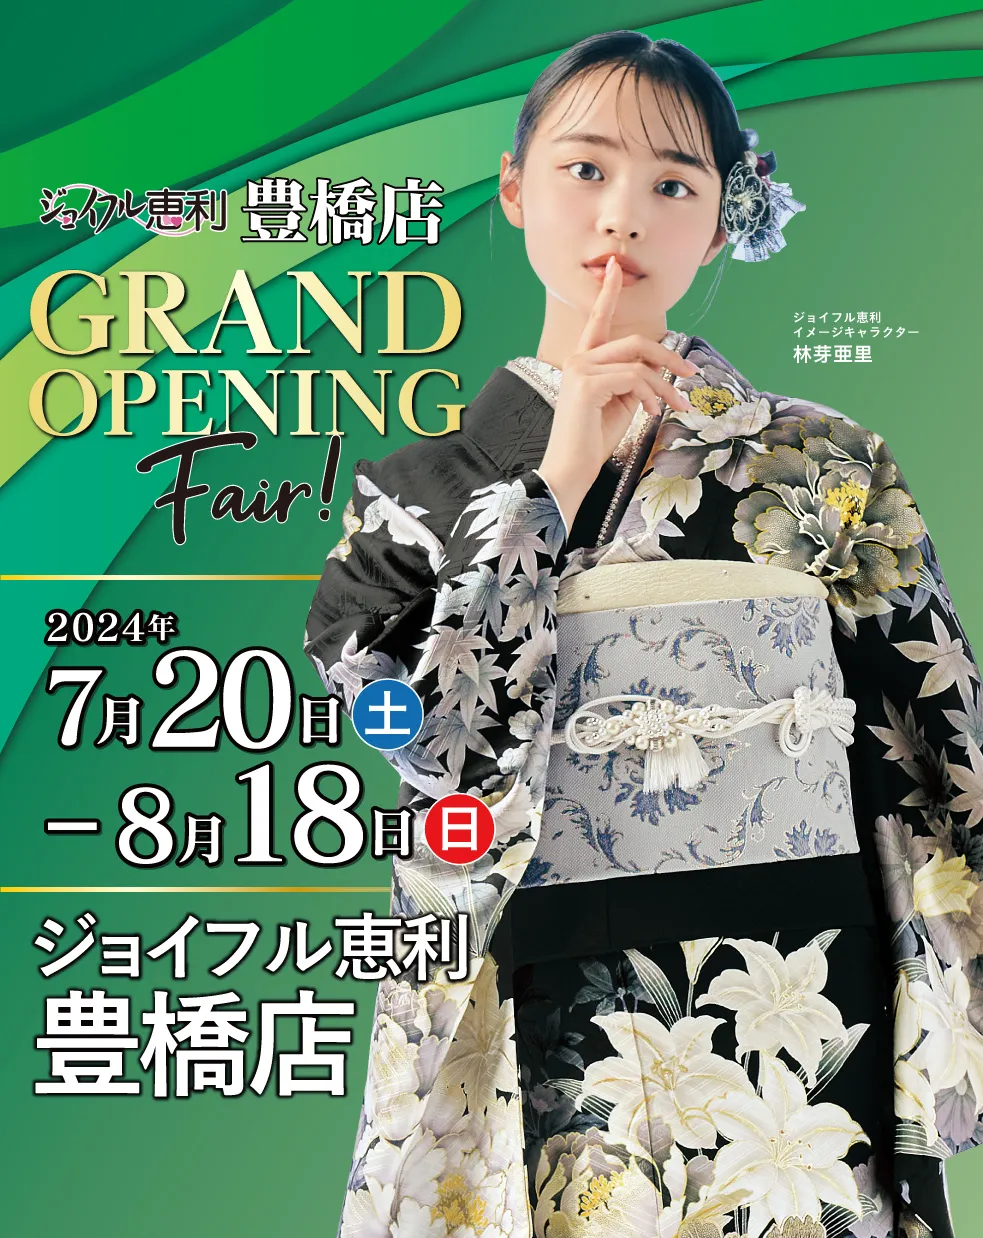 新作振袖大祭典 in 豊橋店 GRAND OPENING Fair